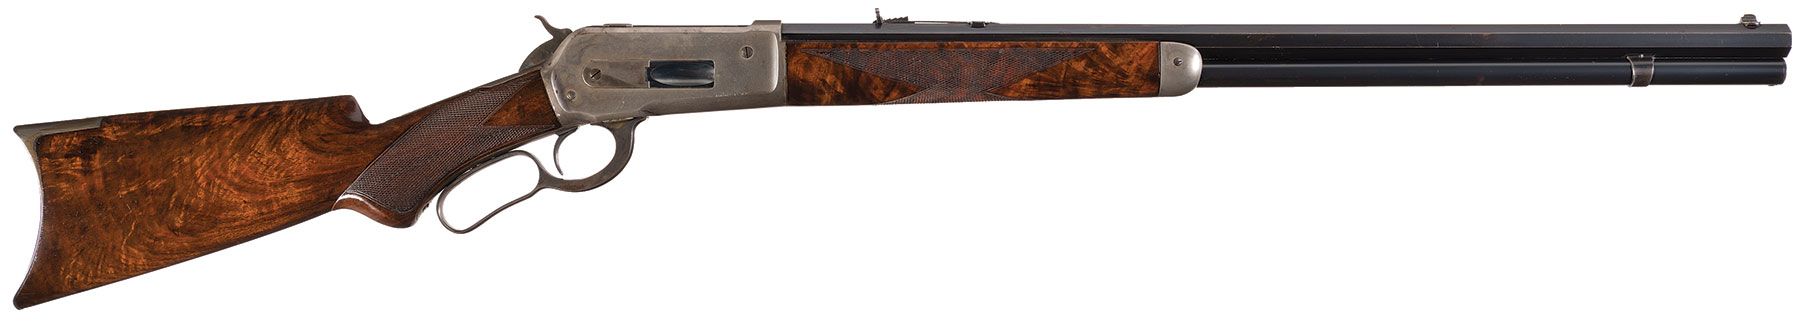 Deluxe Winchester - 1886 45-70 LA Rifle.